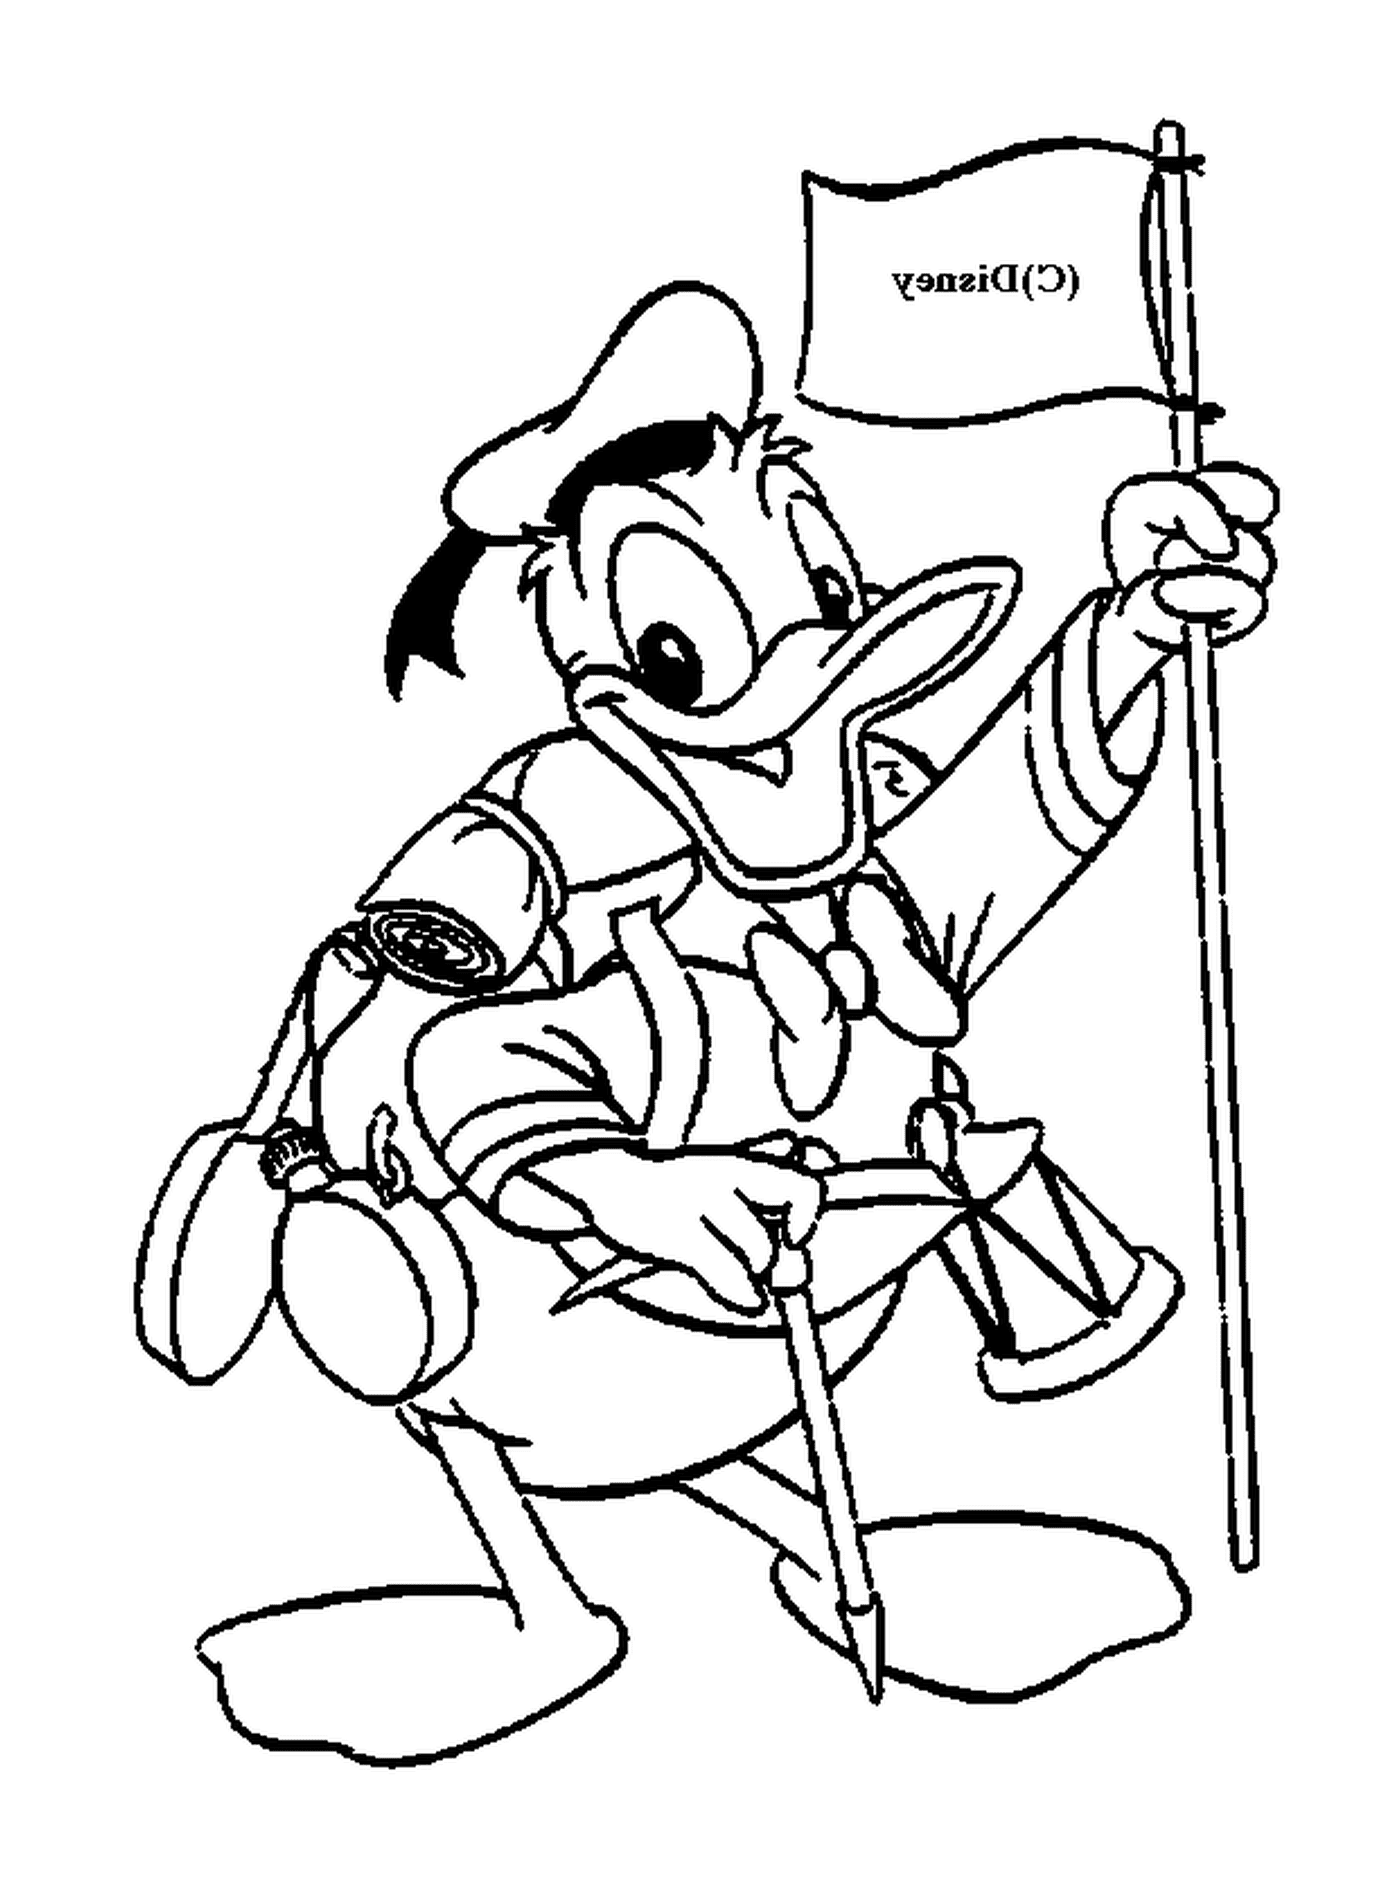  Donald en traje de explorador, orgulloso de su bandera 